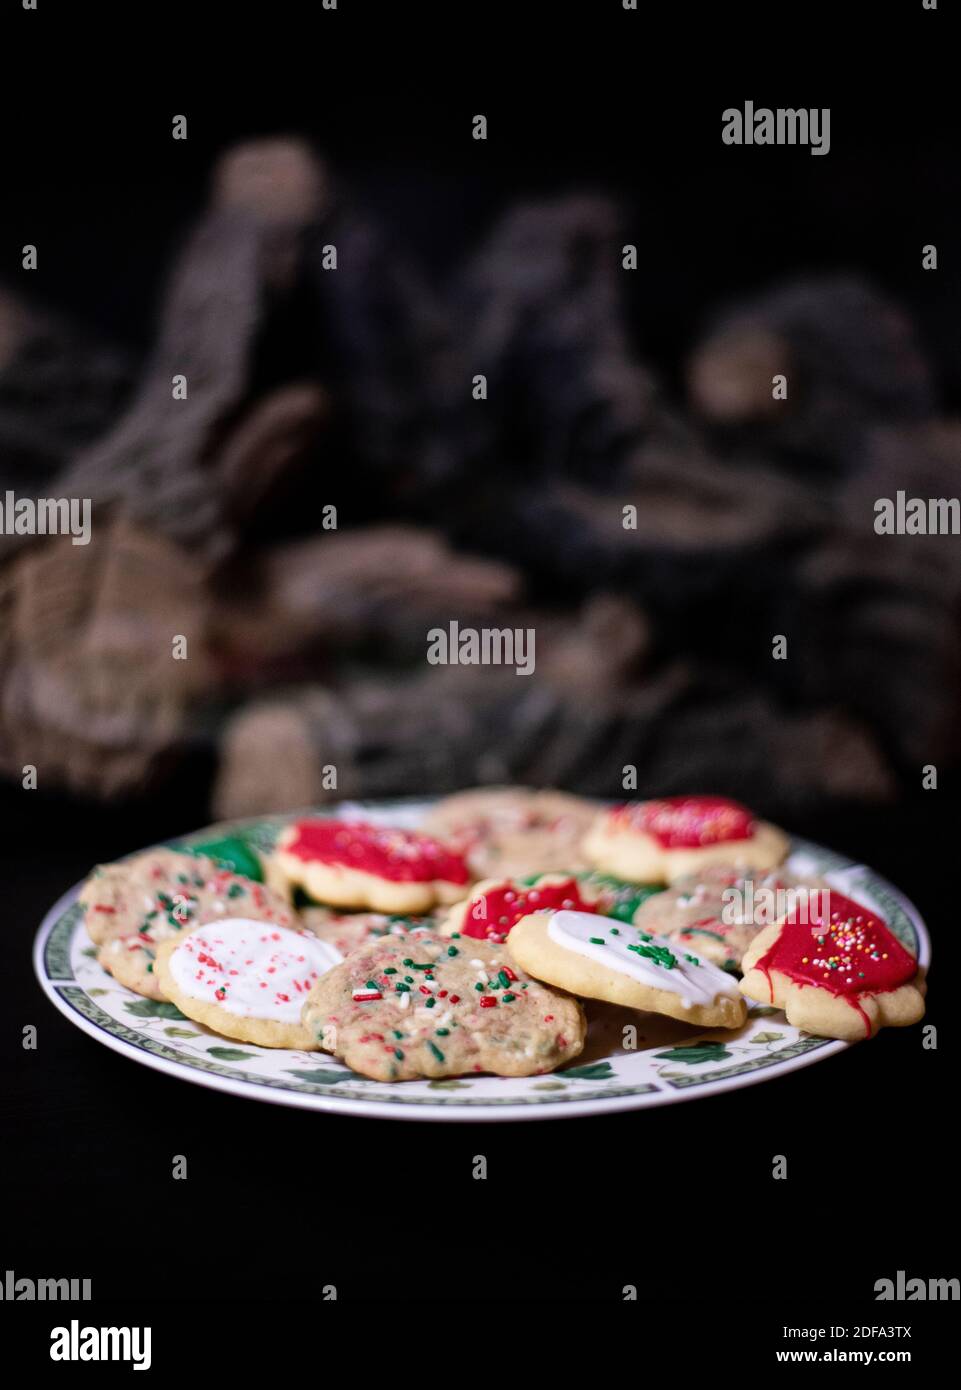 Frische, hausgemachte Weihnachtskekse für den Weihnachtsmann. Zuckerkekse mit Streuseln und Glasur am Kamin und am Weihnachtsbaum. Zeit zum Dekorieren Stockfoto